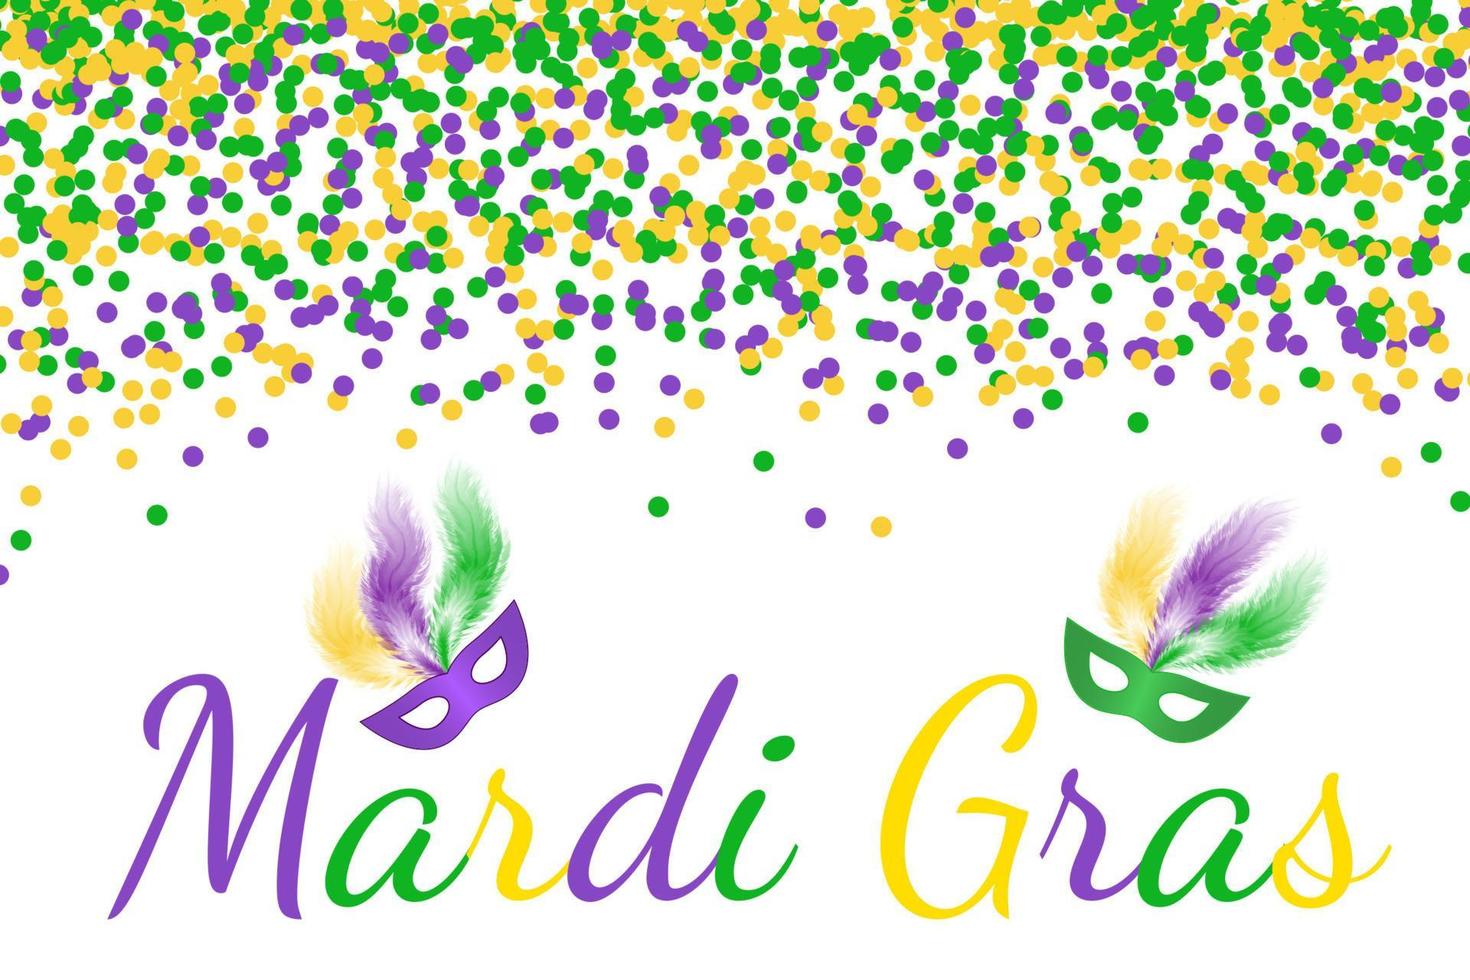 Mardi Gras Carnevale sfondo vettoriale con coriandoli verdi, viola e gialli. modello di progettazione facile da modificare per i tuoi progetti.